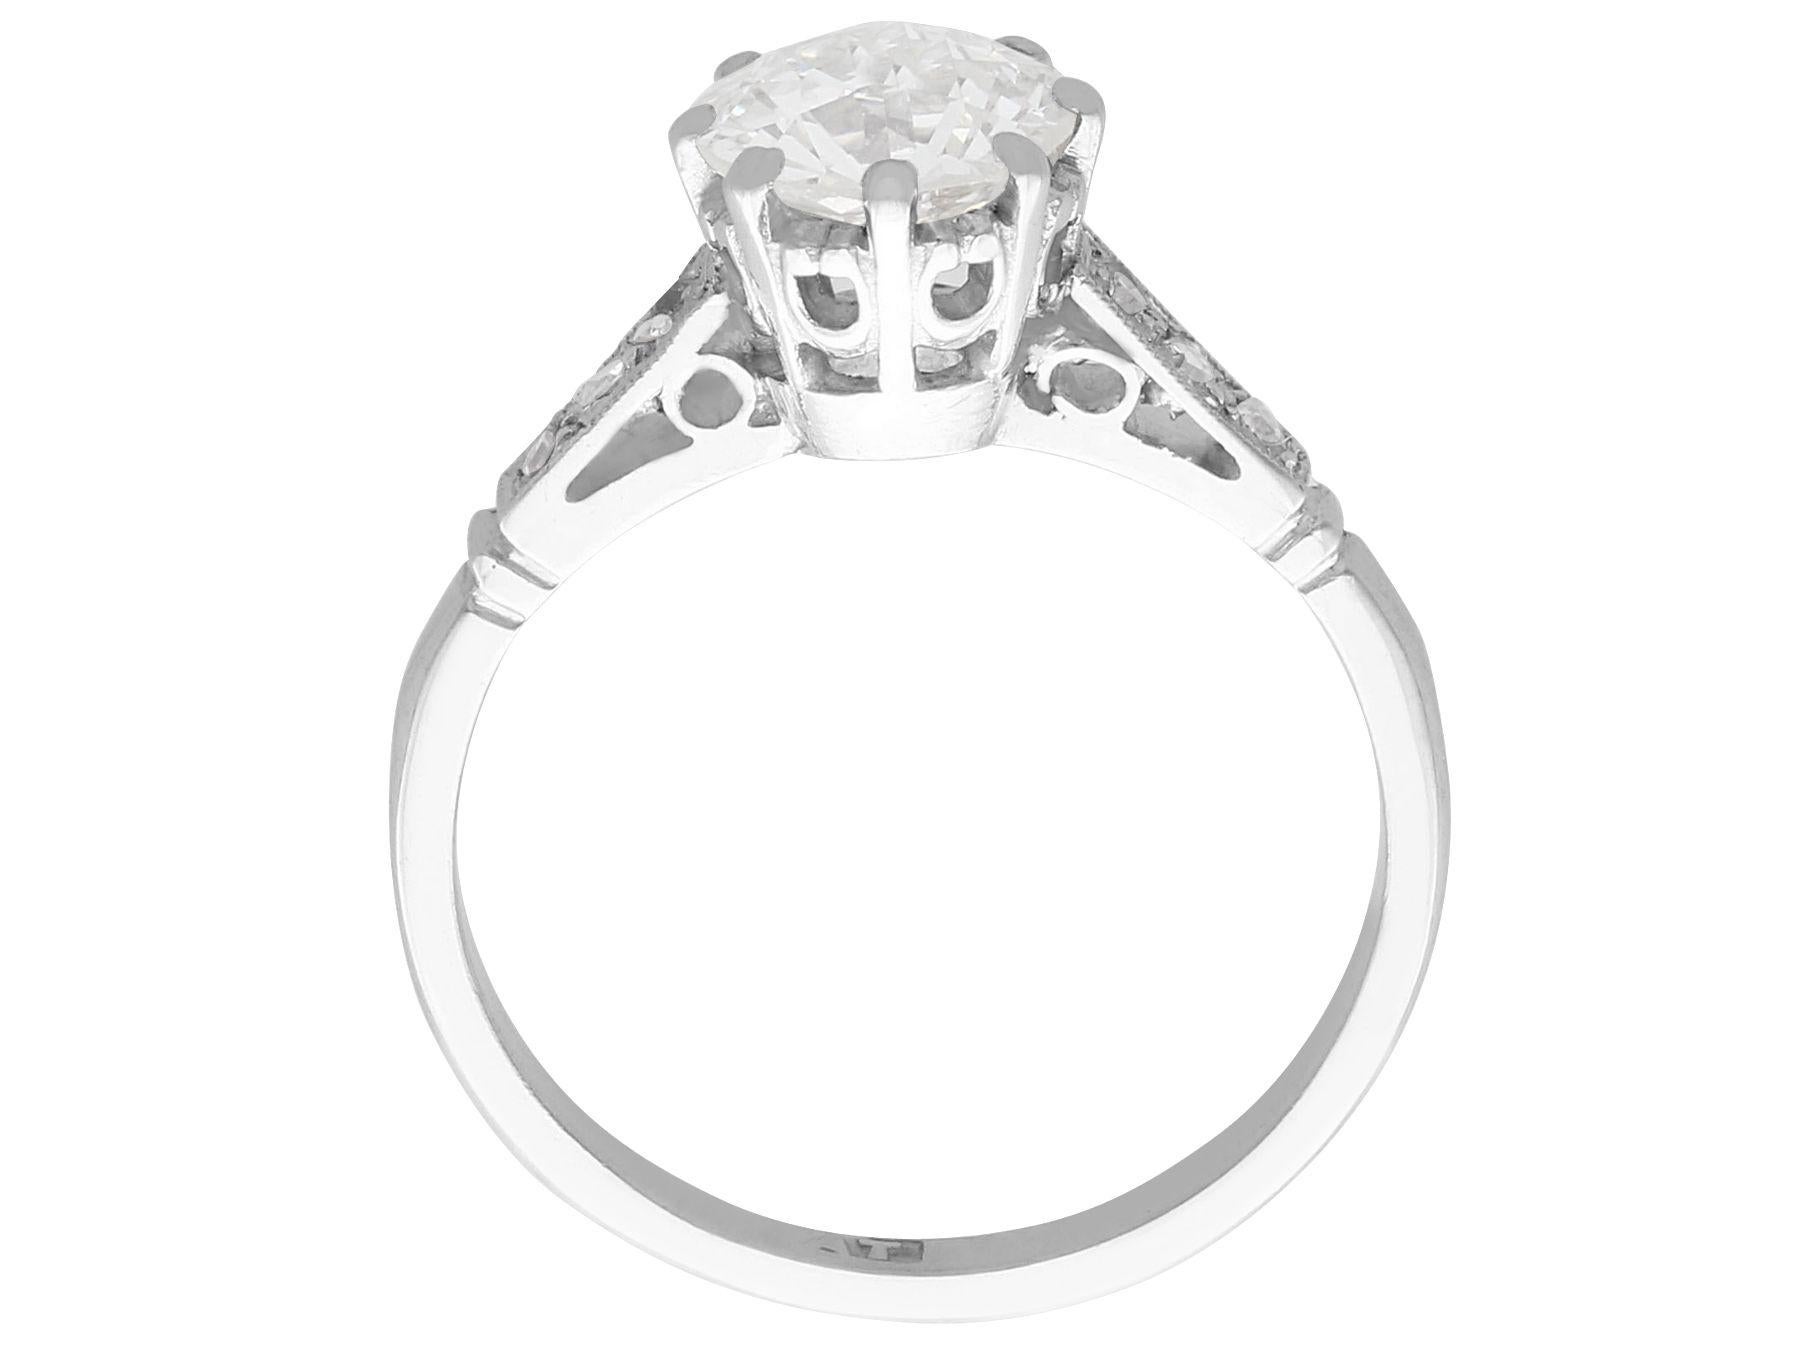 Women's or Men's Antique 1.08 Carat Diamond and Platinum Solitaire Ring